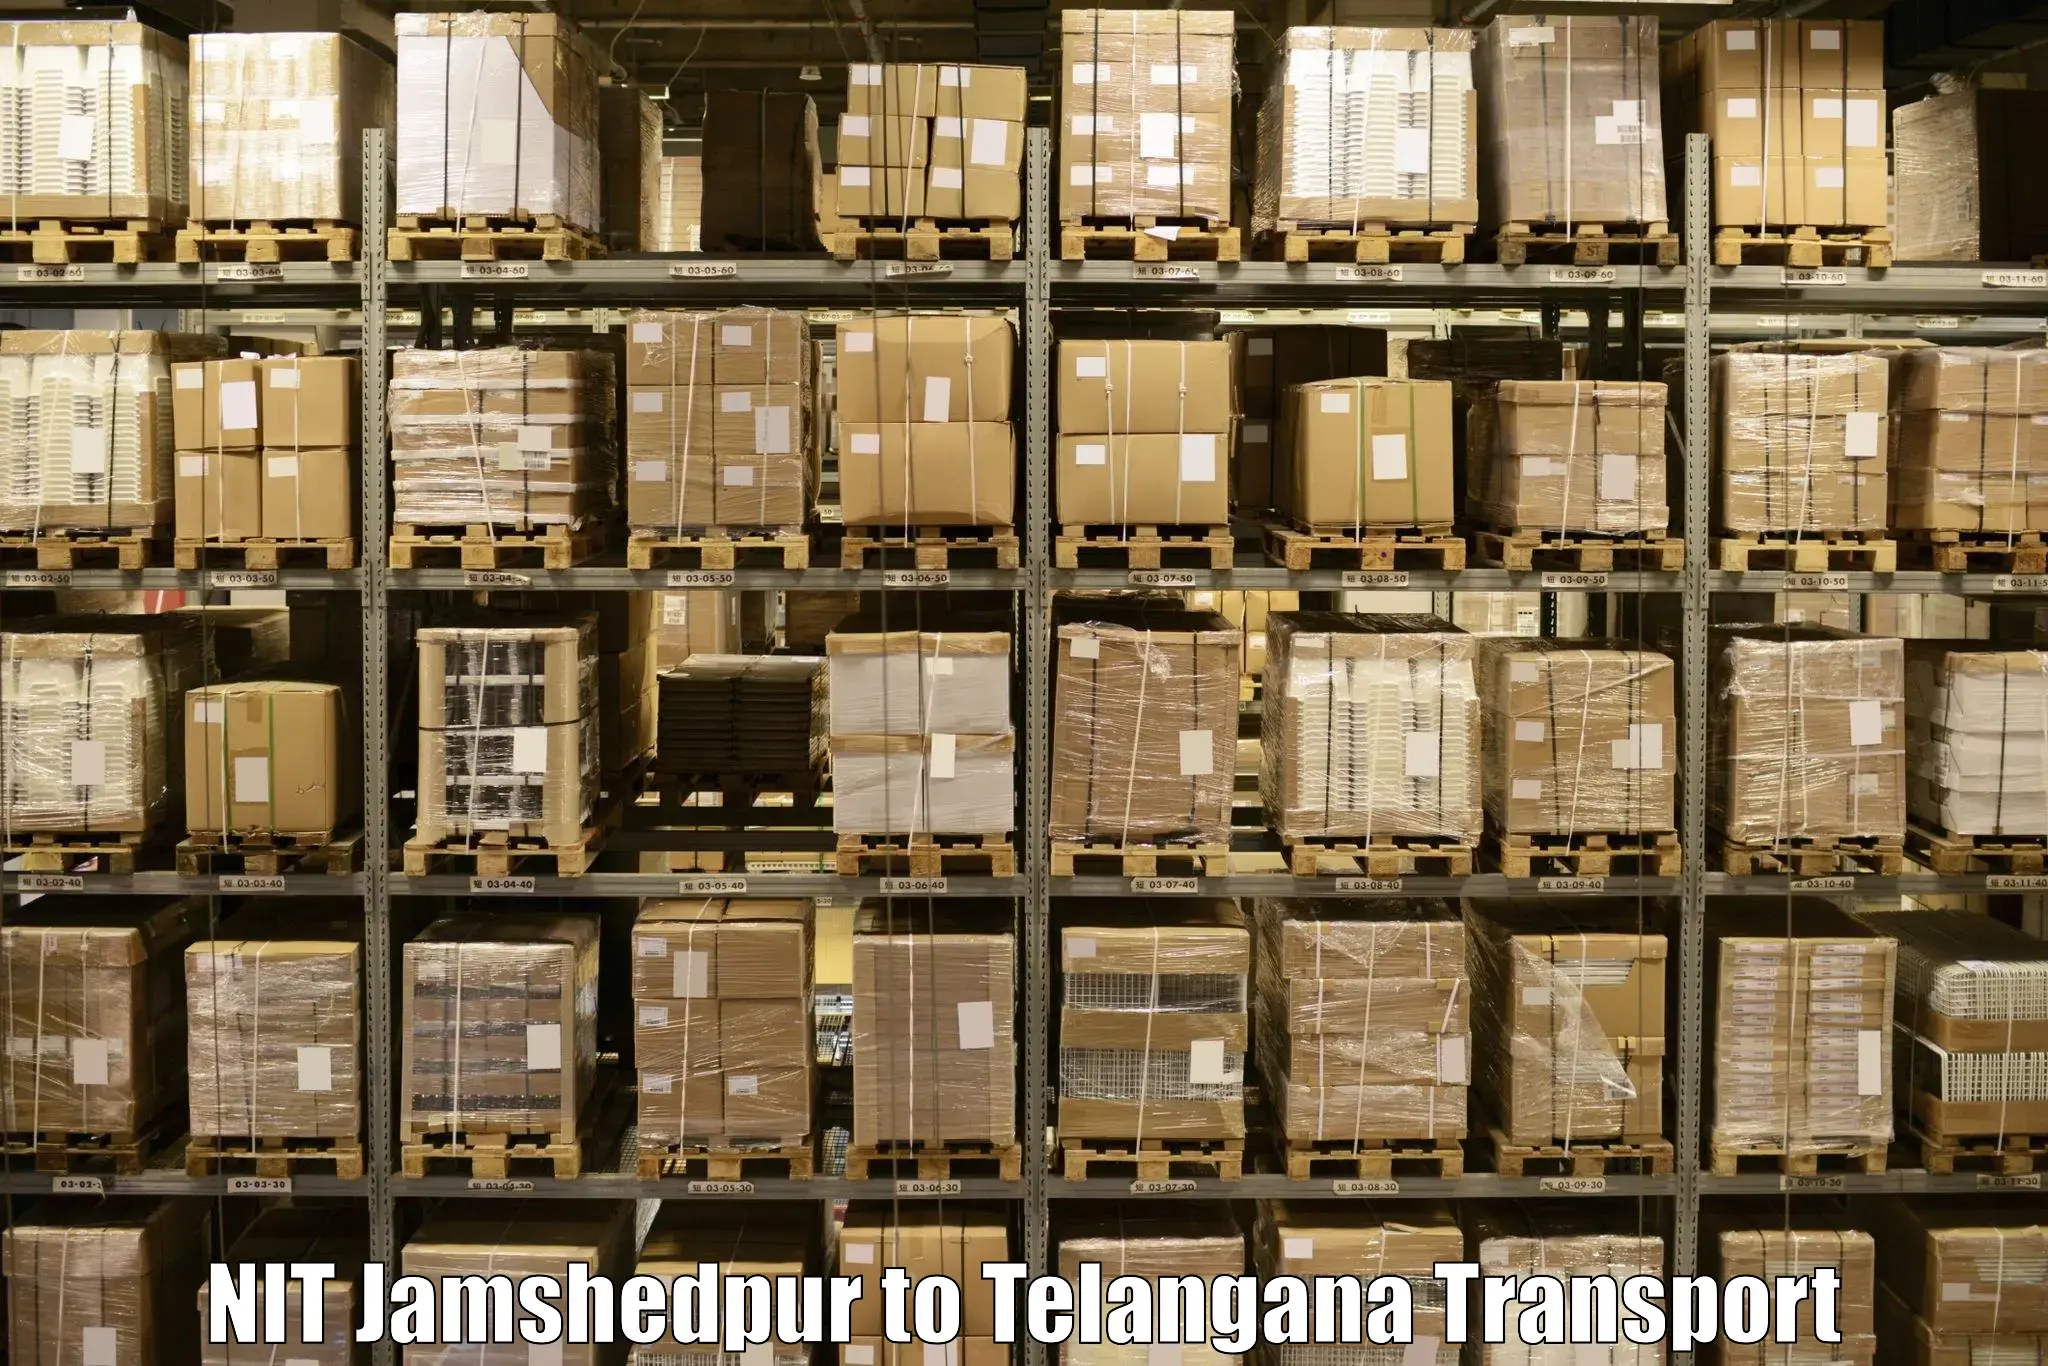 Transportation solution services NIT Jamshedpur to Jadcherla